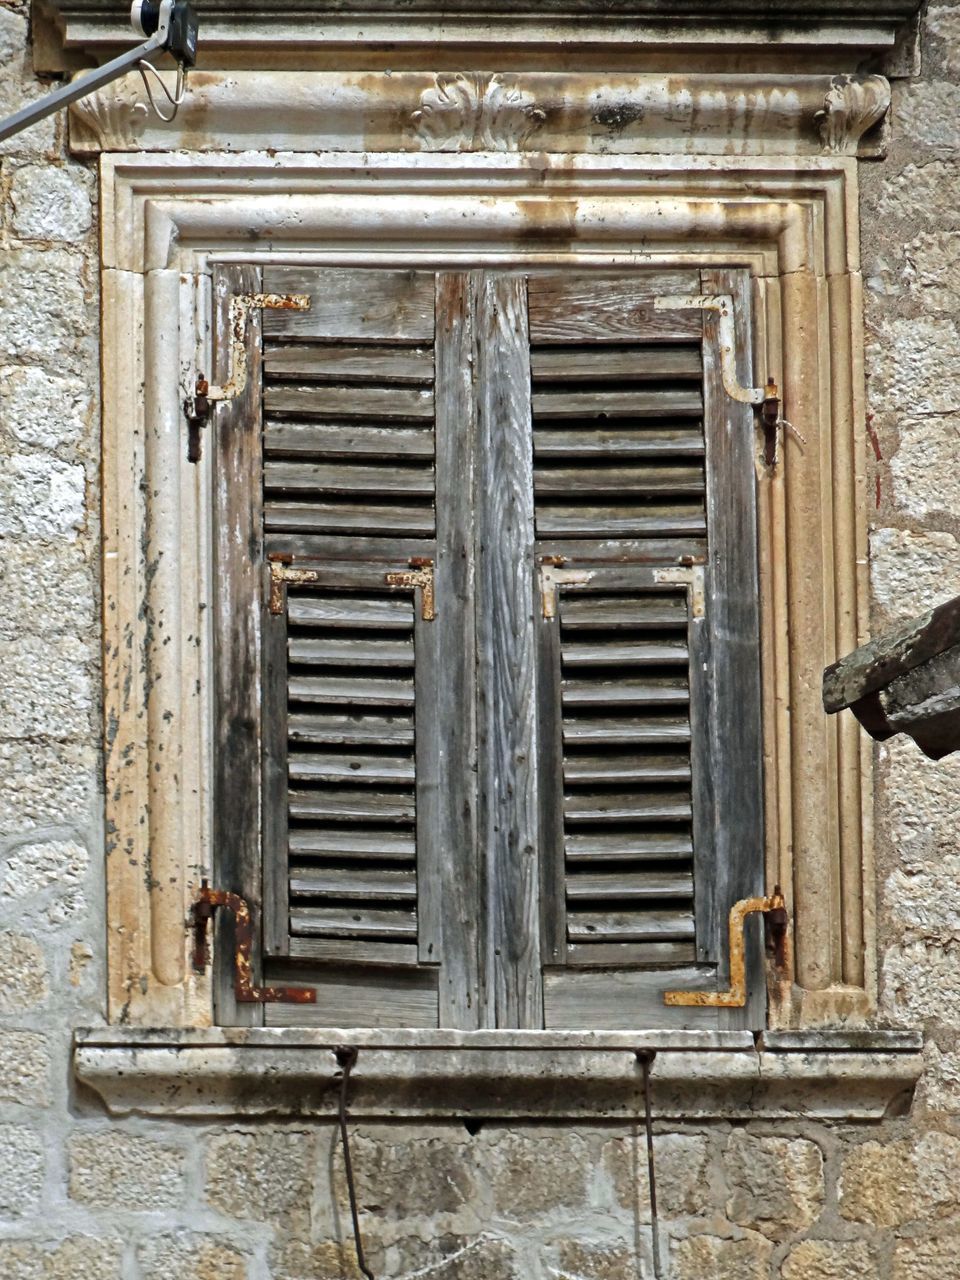 CLOSED WOODEN DOOR OF WINDOW